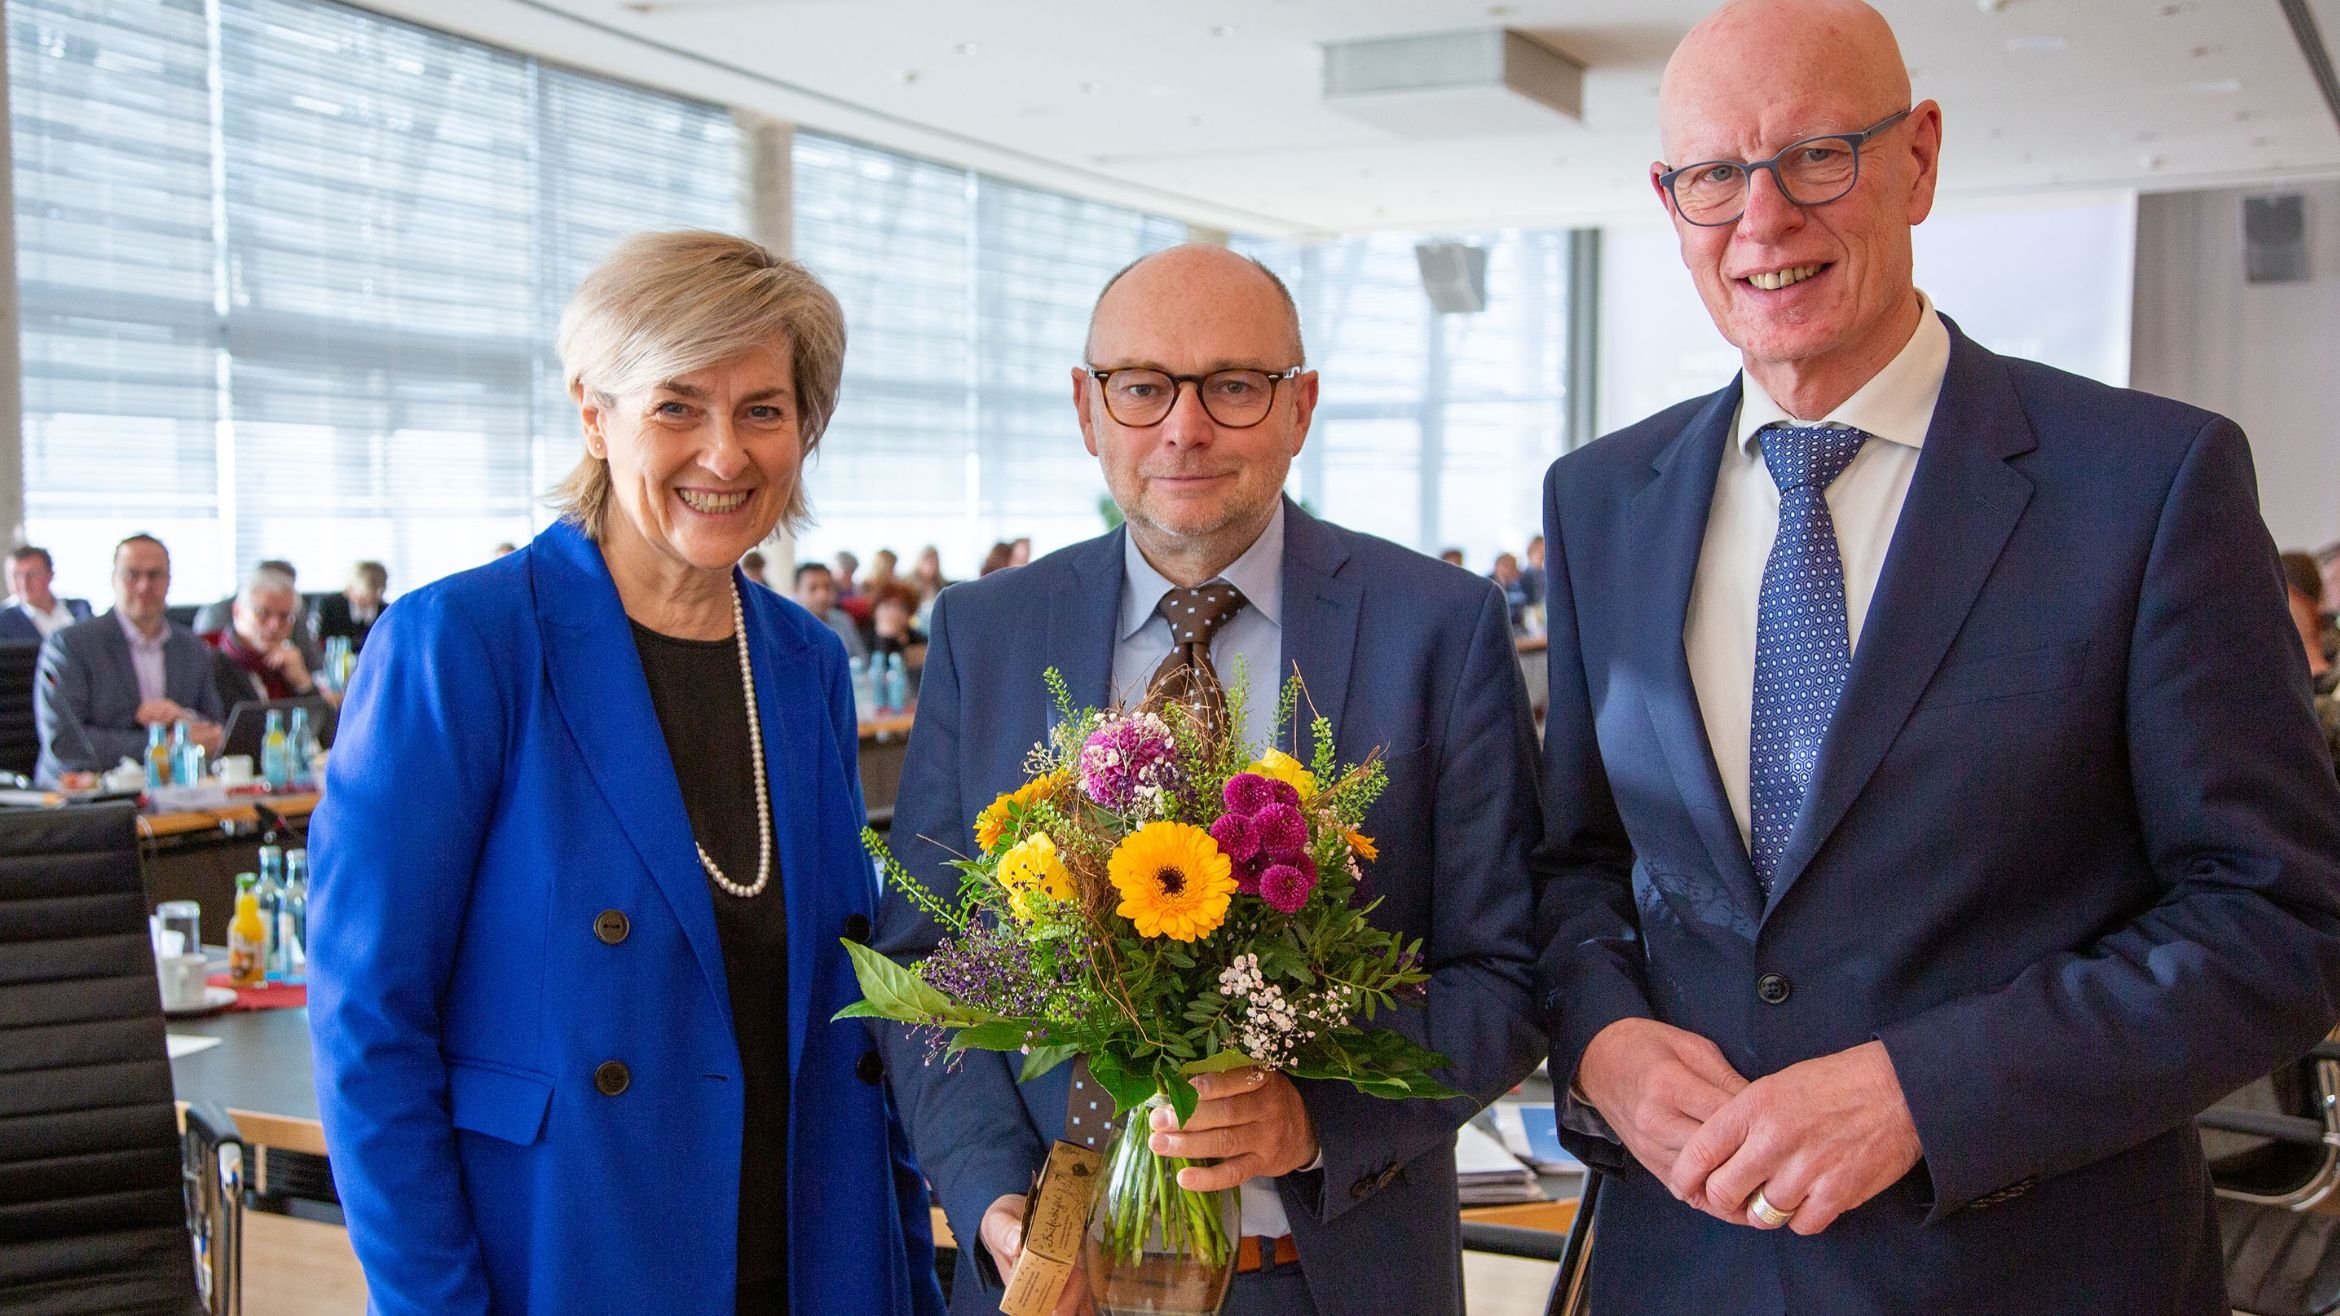 Tim Herden (m.) wurde zum neuen MDR-Landesfunkhausdirektor in Sachsen-Anhalt gewählt. Intendantin Karola Wille und Rundfunksratsvorsitzender Dietrich Bauer gratulierten -